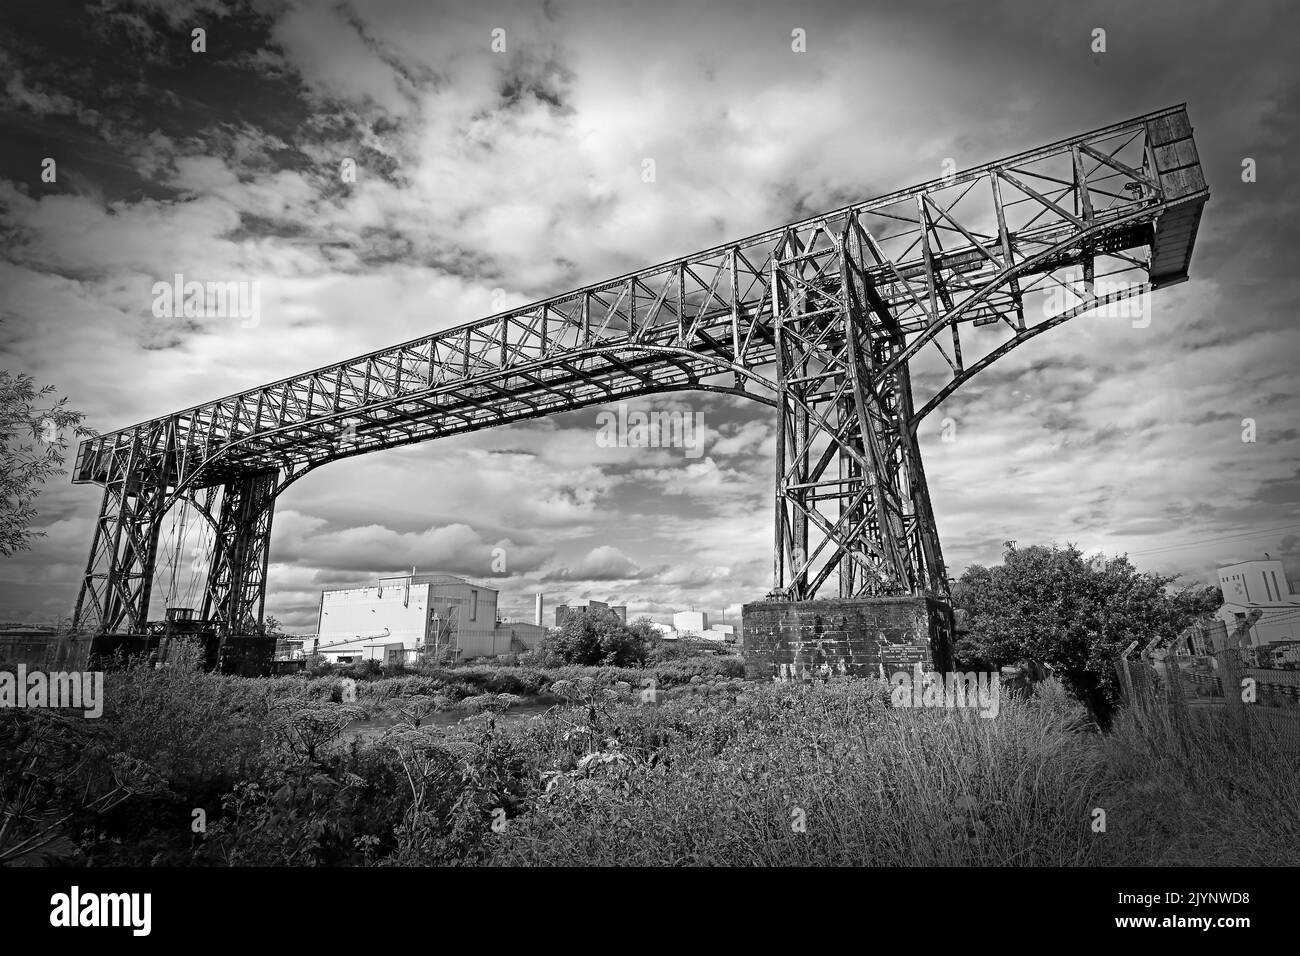 Pont de transport historique Warrington 1916, au-dessus de la rivière Mersey à Bank Quay , Crosfields transporter Bridge, Cheshire, Angleterre, Royaume-Uni Banque D'Images